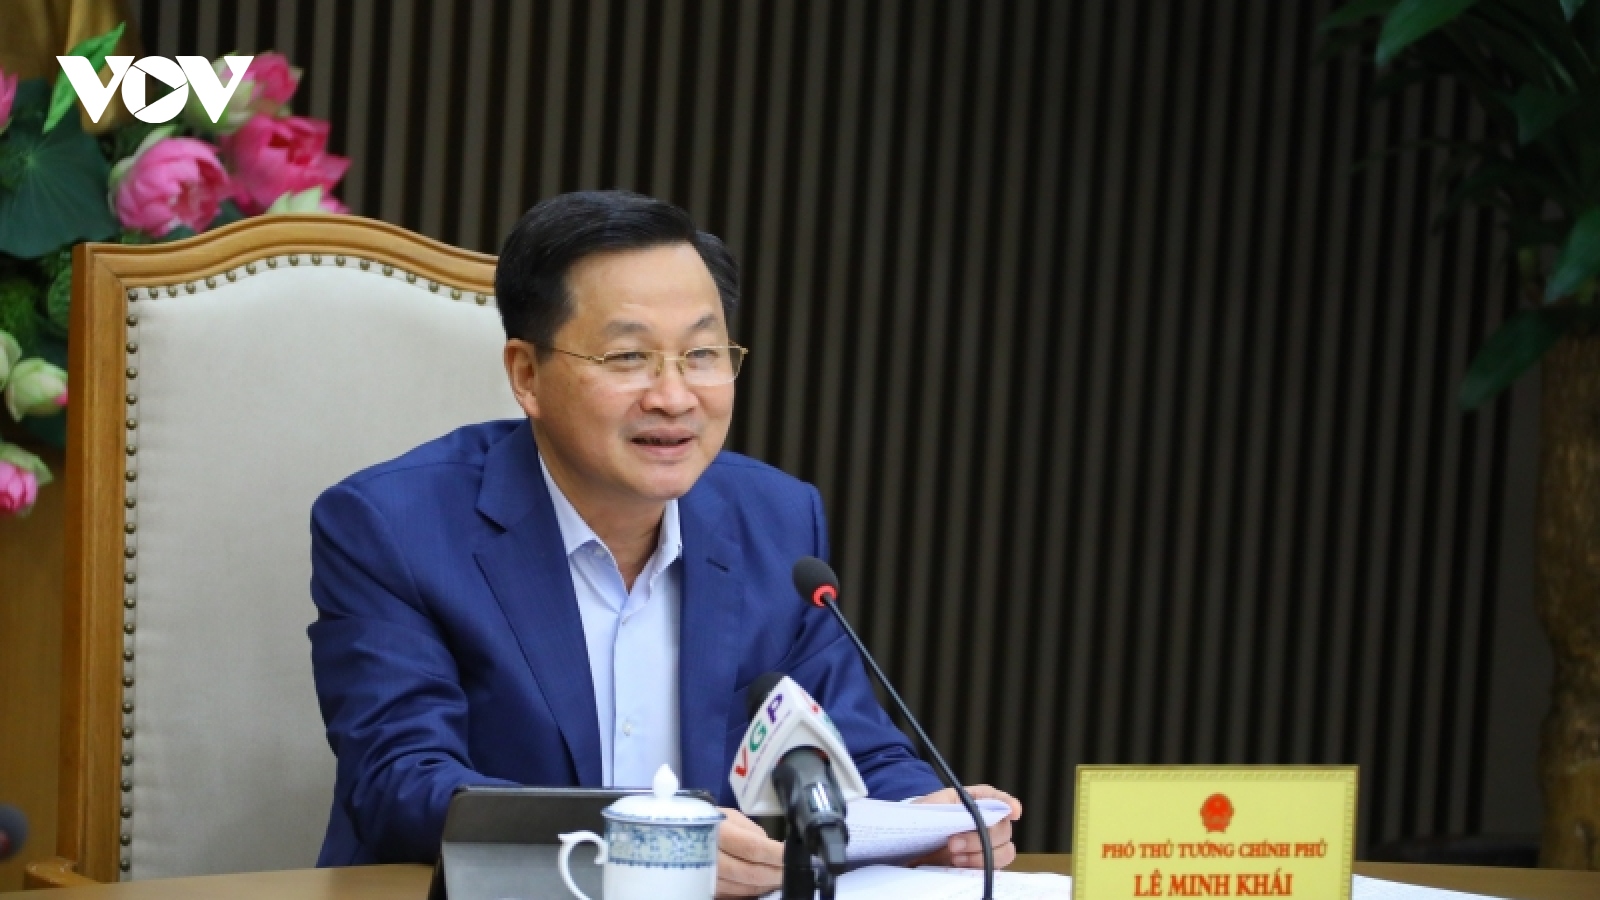 Phó Thủ tướng Lê Minh Khái chủ trì cuộc họp về mua sắm trang thiết bị phòng chống Covid-19